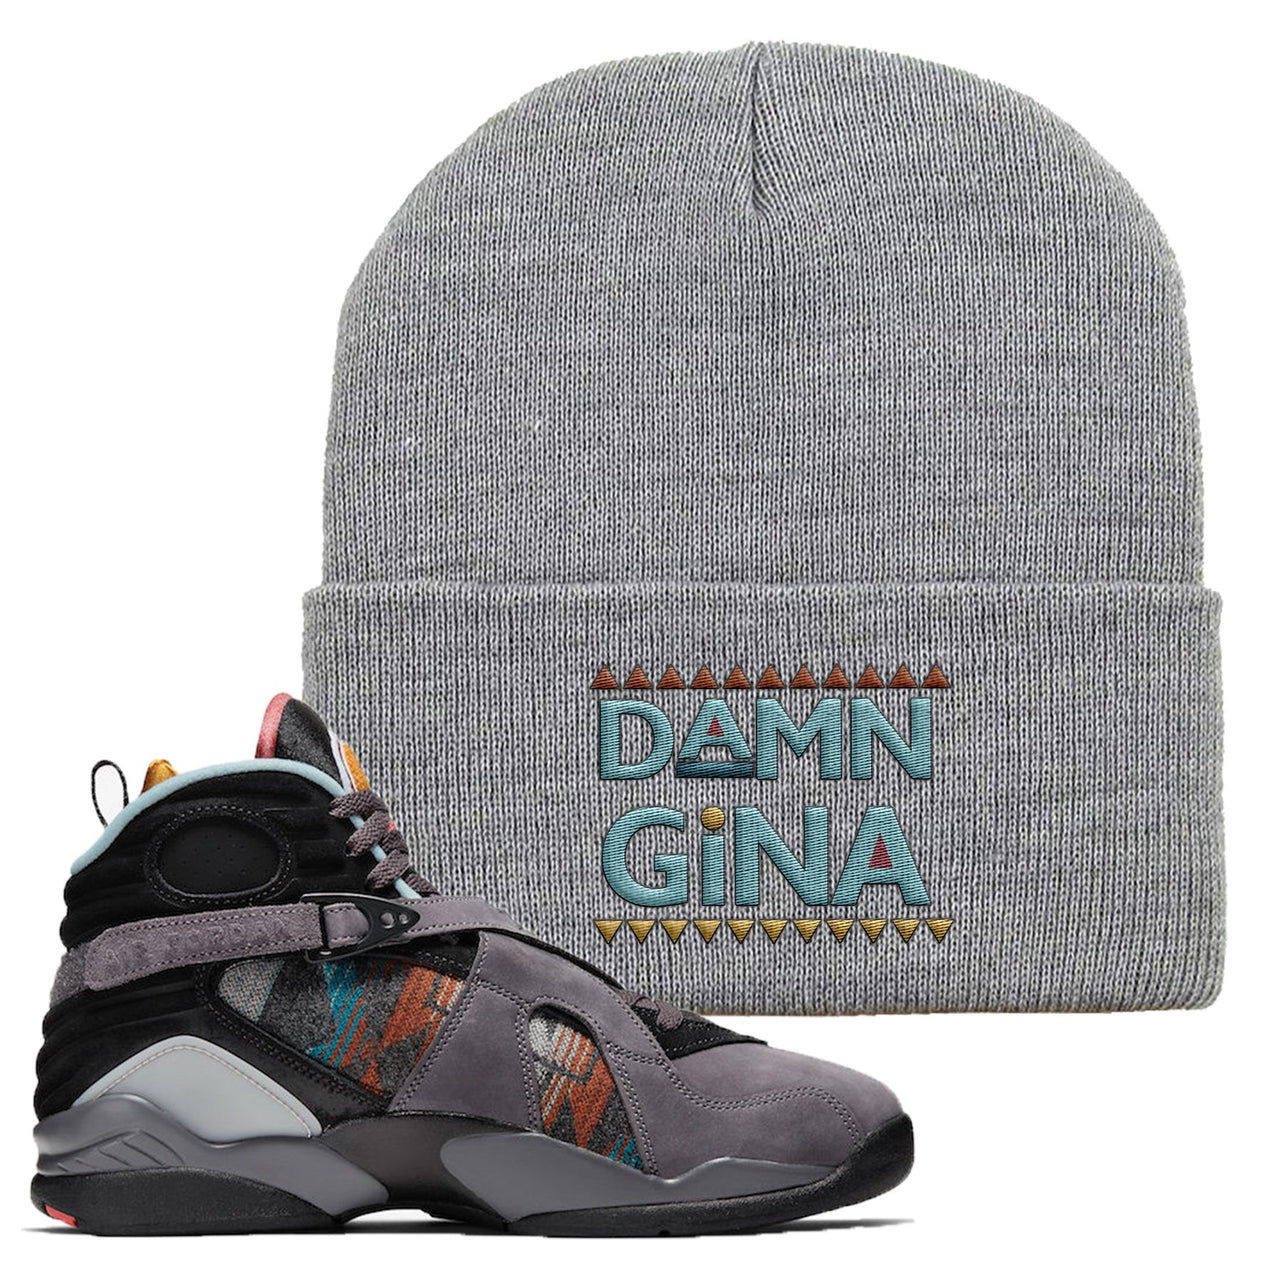 Jordan 8 N7 Pendleton Damn Gina Light Gray Sneaker Hook Up Beanie